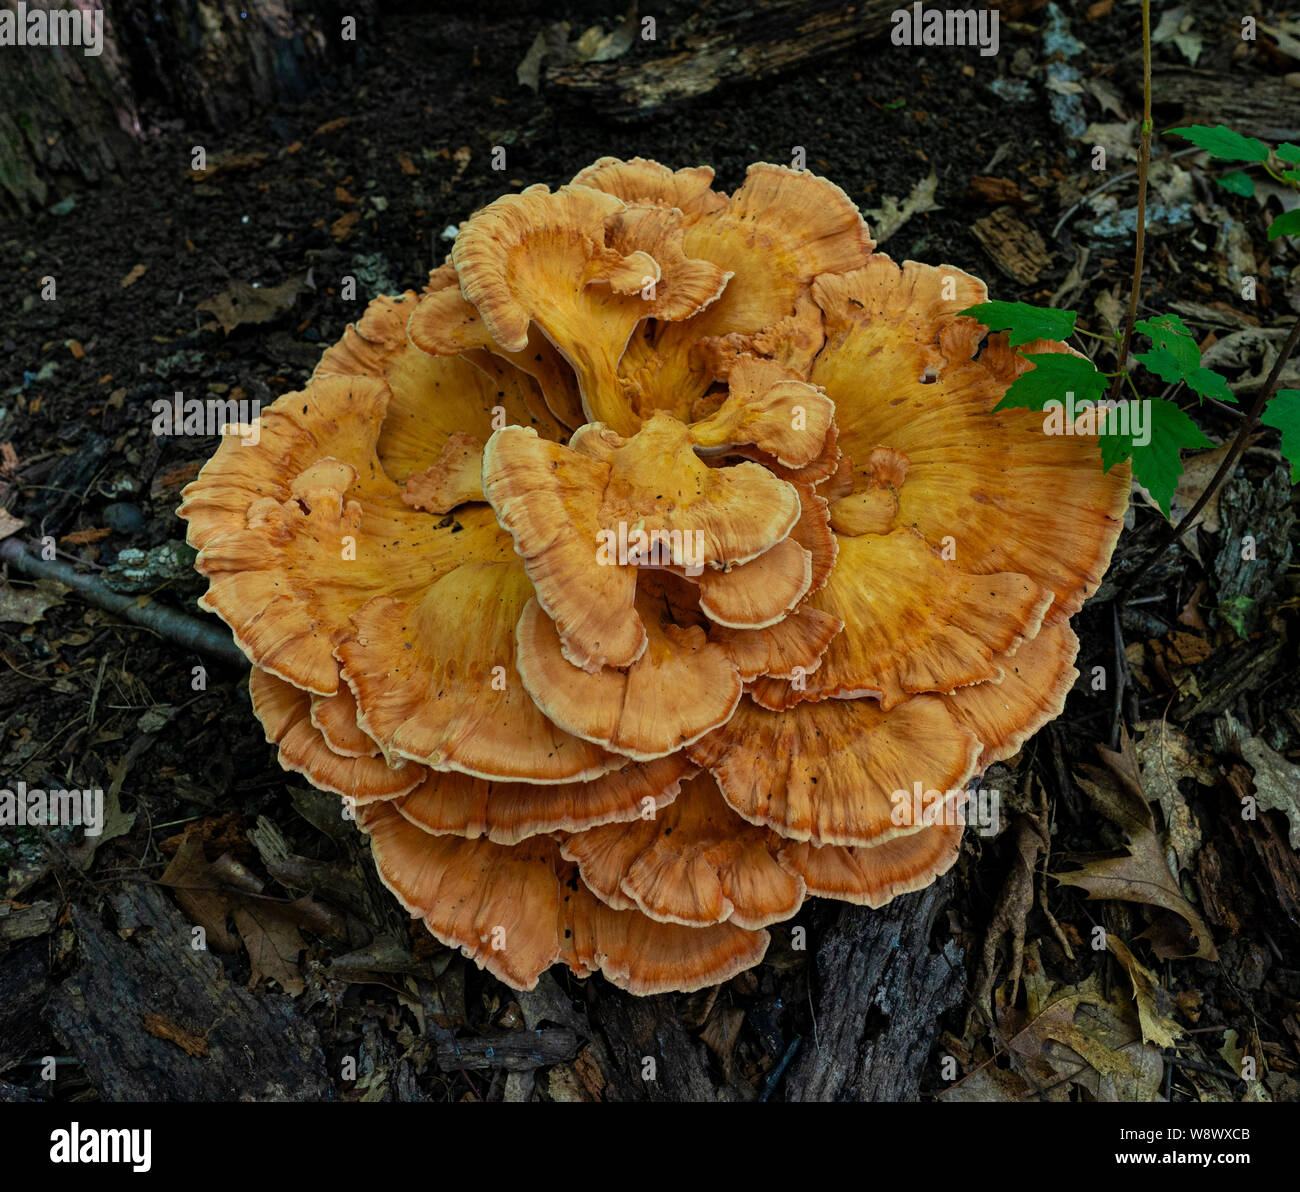 Spesso arboree colorati o giovani pollo di boschi di funghi o zolfo fungo ripiano Foto Stock